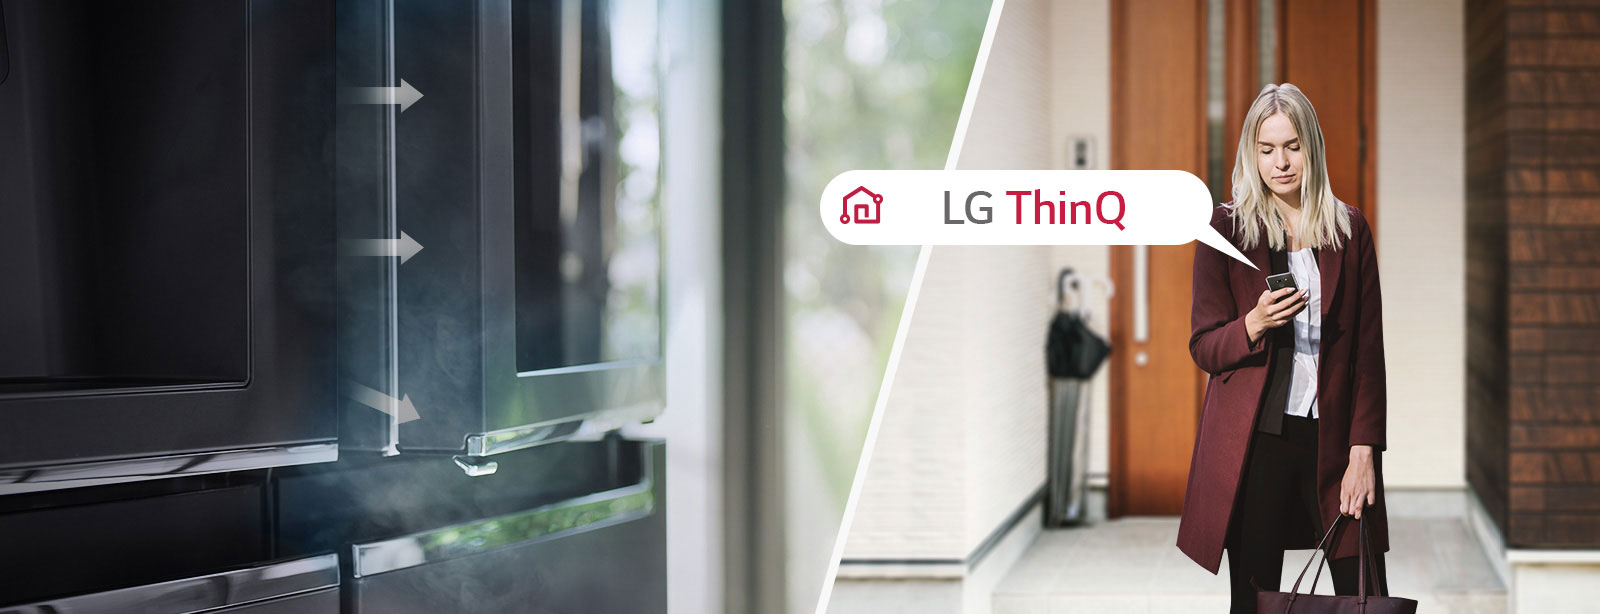 LG ThinQ™ applikáció lehetővé teszi, hogy a főbb funkciókat akár az otthonától távolról is módosíthassa Wi-Fi-n keresztül. Így még arra is figyelmezteti, ha nyitva maradt az ajtó.